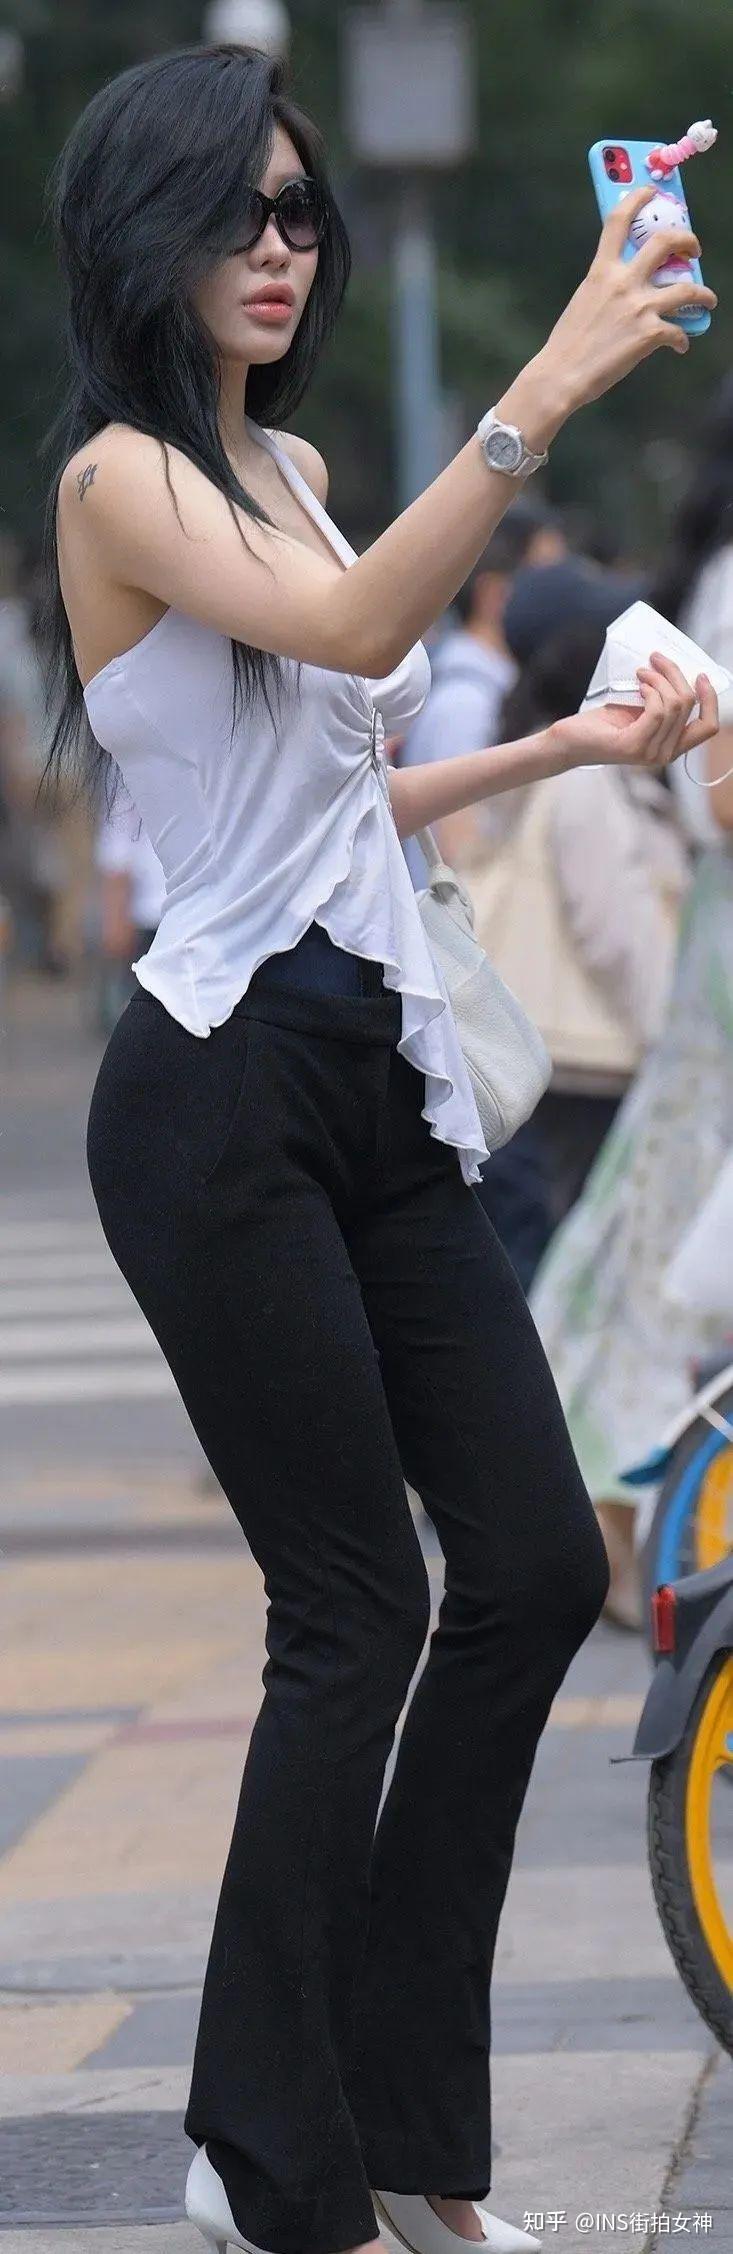 街拍女神:黑色紧身裤白色露背上衣的时尚女生